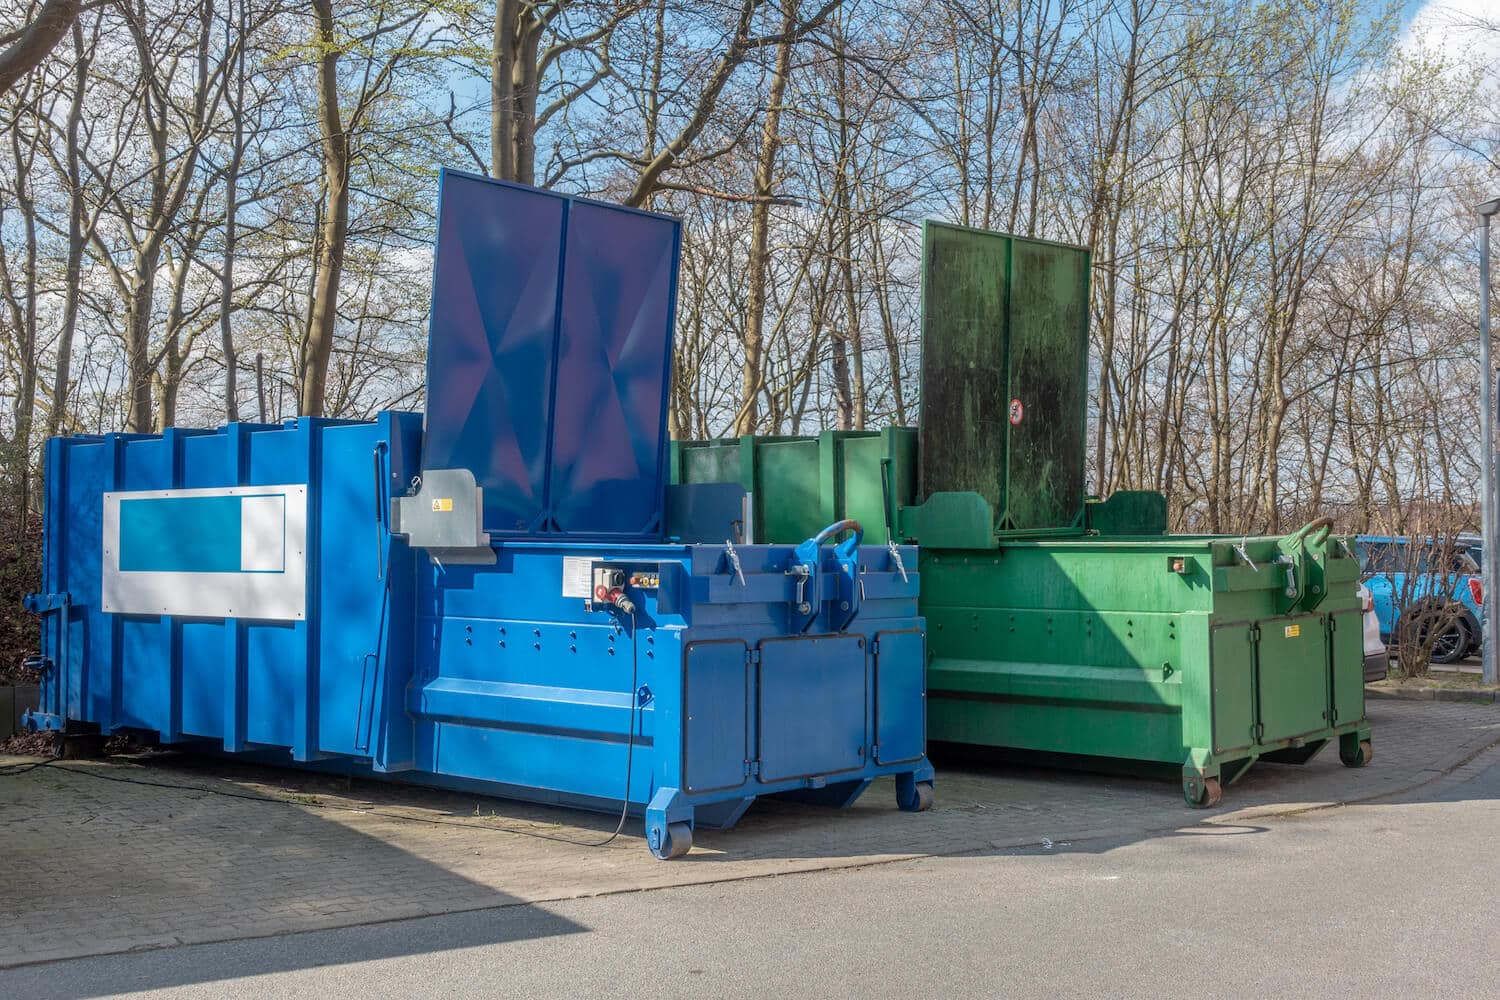 Two dumpster compactors